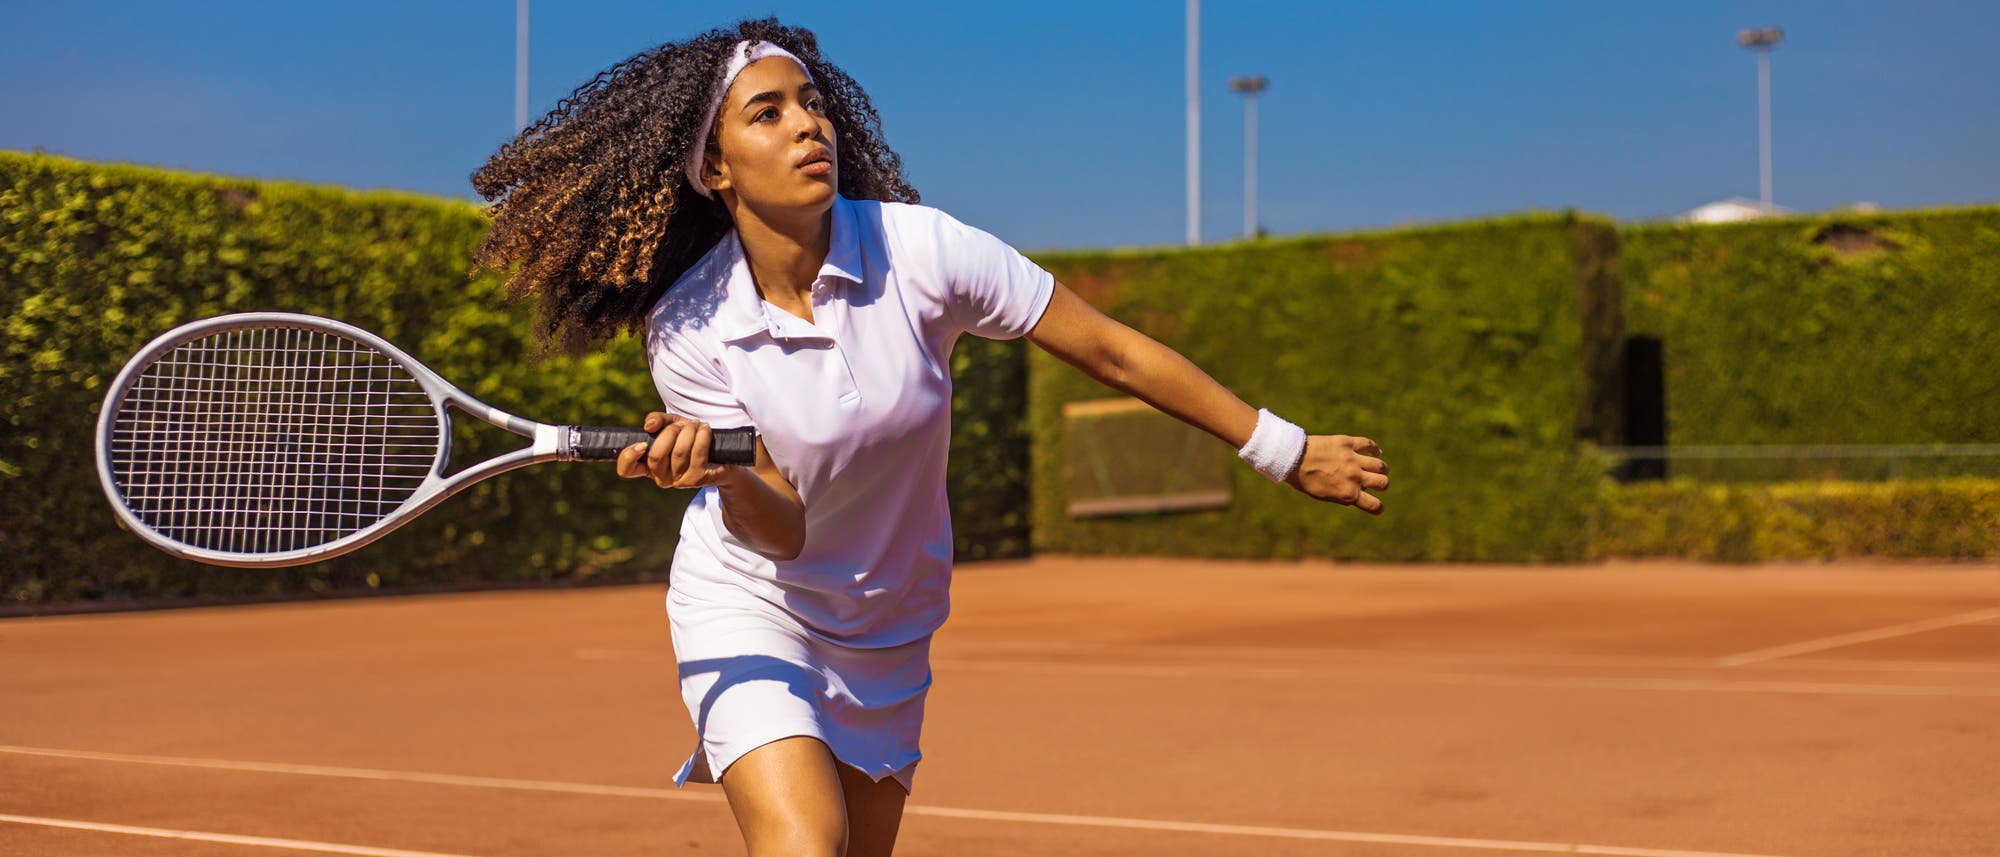 Tennis spielen ist gut für das Gehirn, kann bei wiederholt falscher Belastung aber dem Ellenbogen schaden.